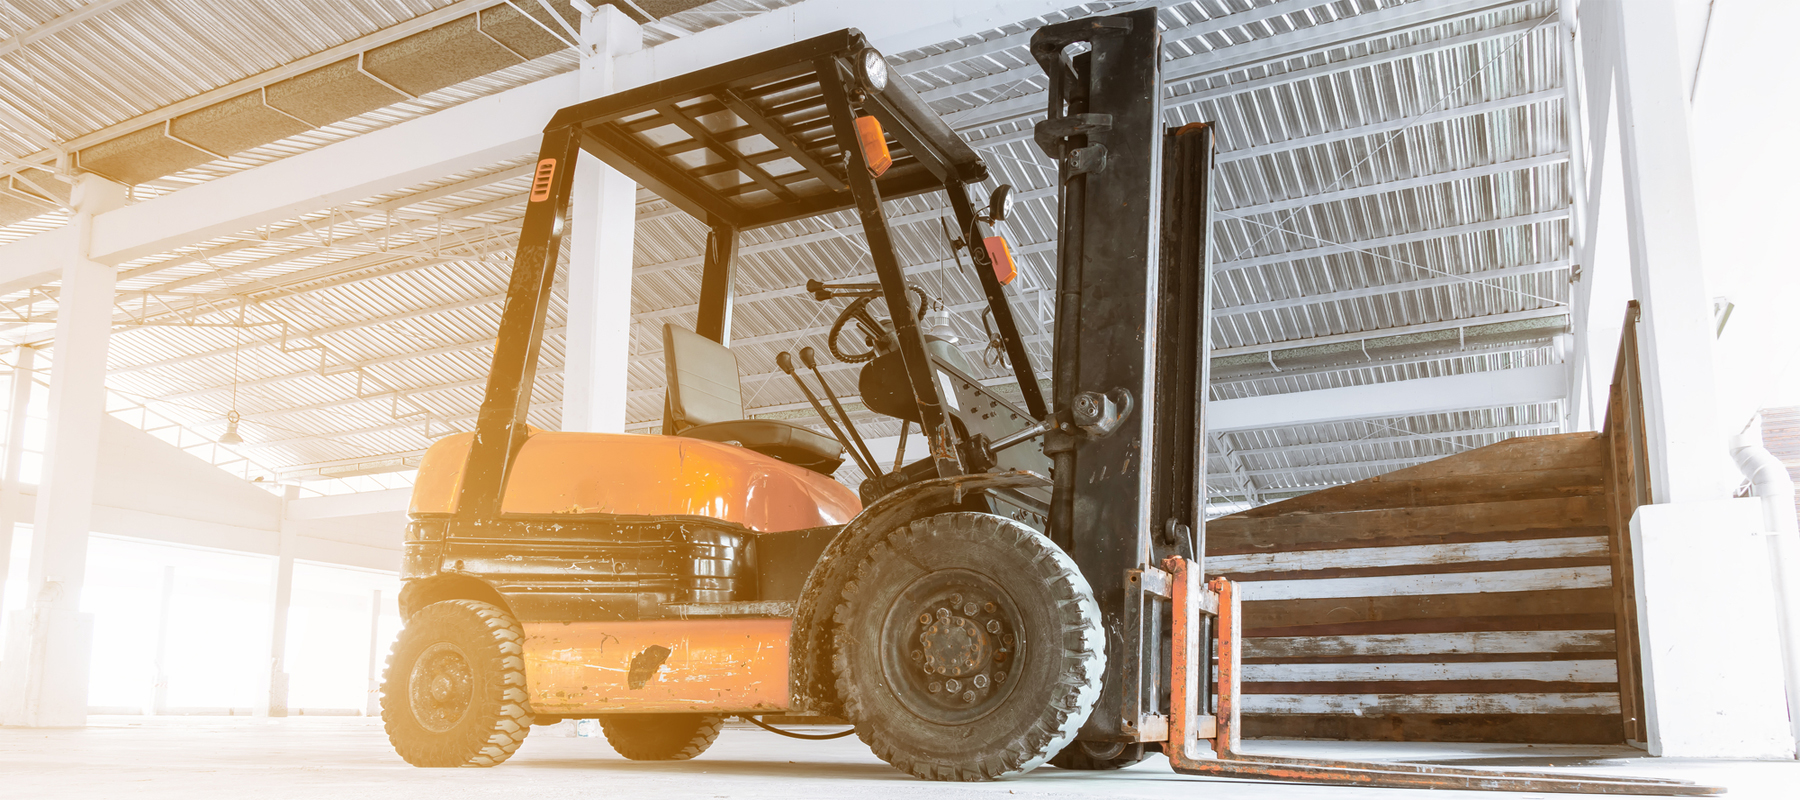 Large Rental Forklift in Warehouse